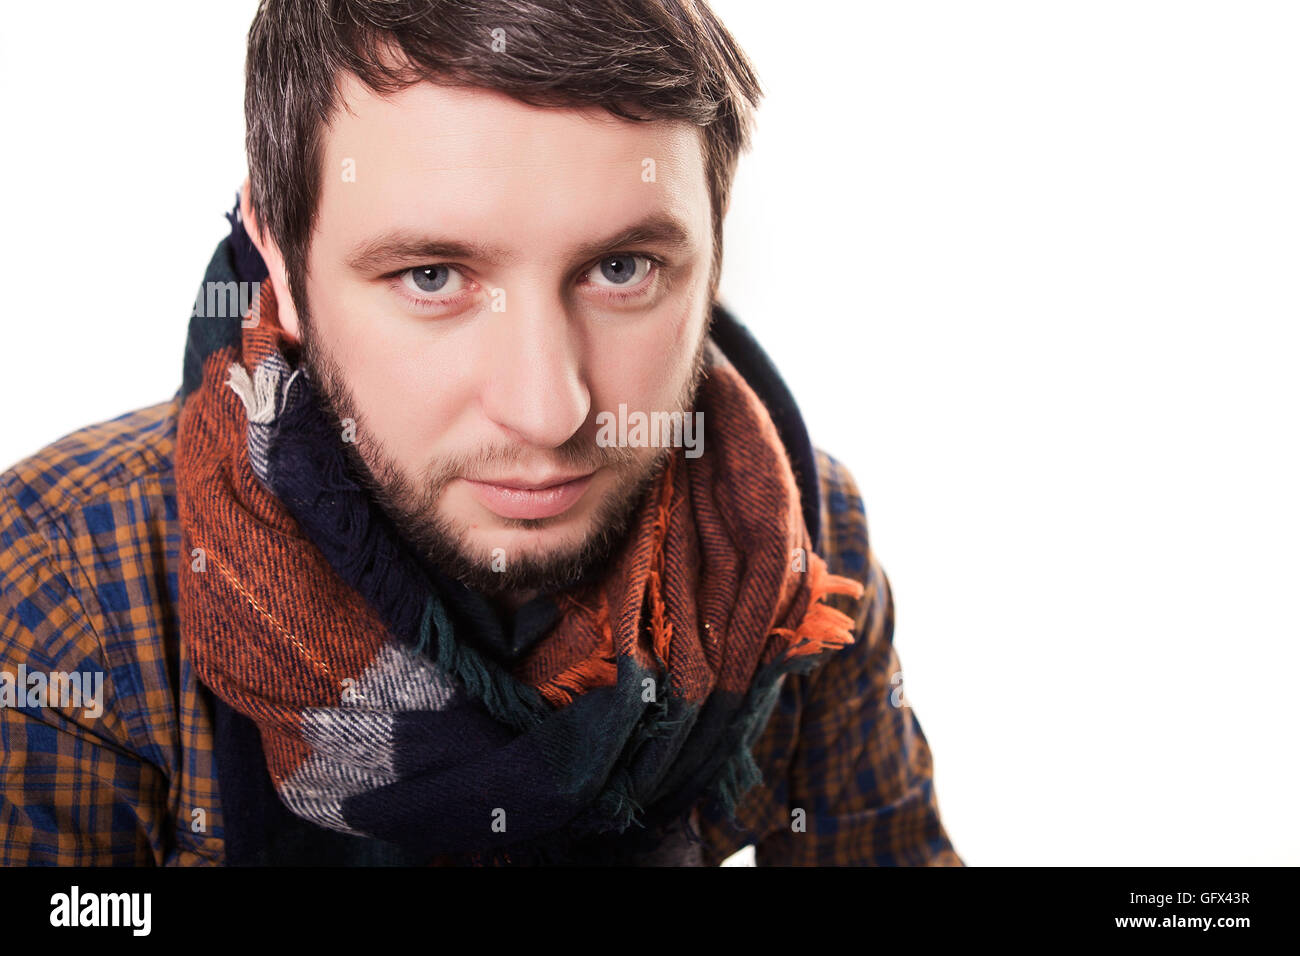 Шарф нос. Артист в шарфе. Зарыться носом в шарф. Певец с шарфом. Фото с шарфом на голове парня.